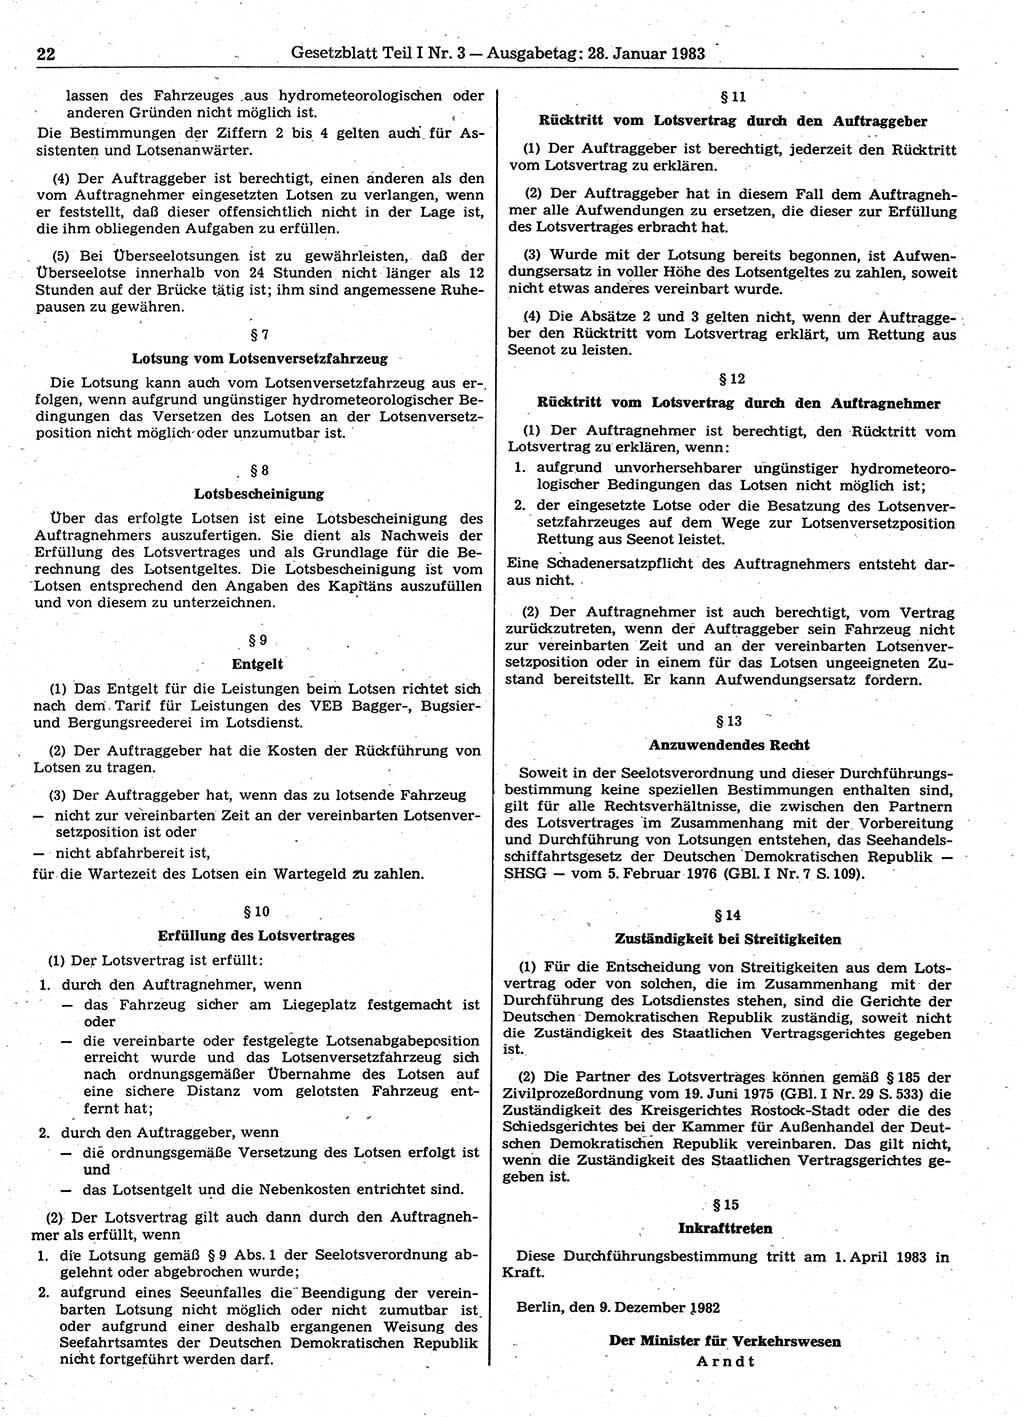 Gesetzblatt (GBl.) der Deutschen Demokratischen Republik (DDR) Teil Ⅰ 1983, Seite 22 (GBl. DDR Ⅰ 1983, S. 22)